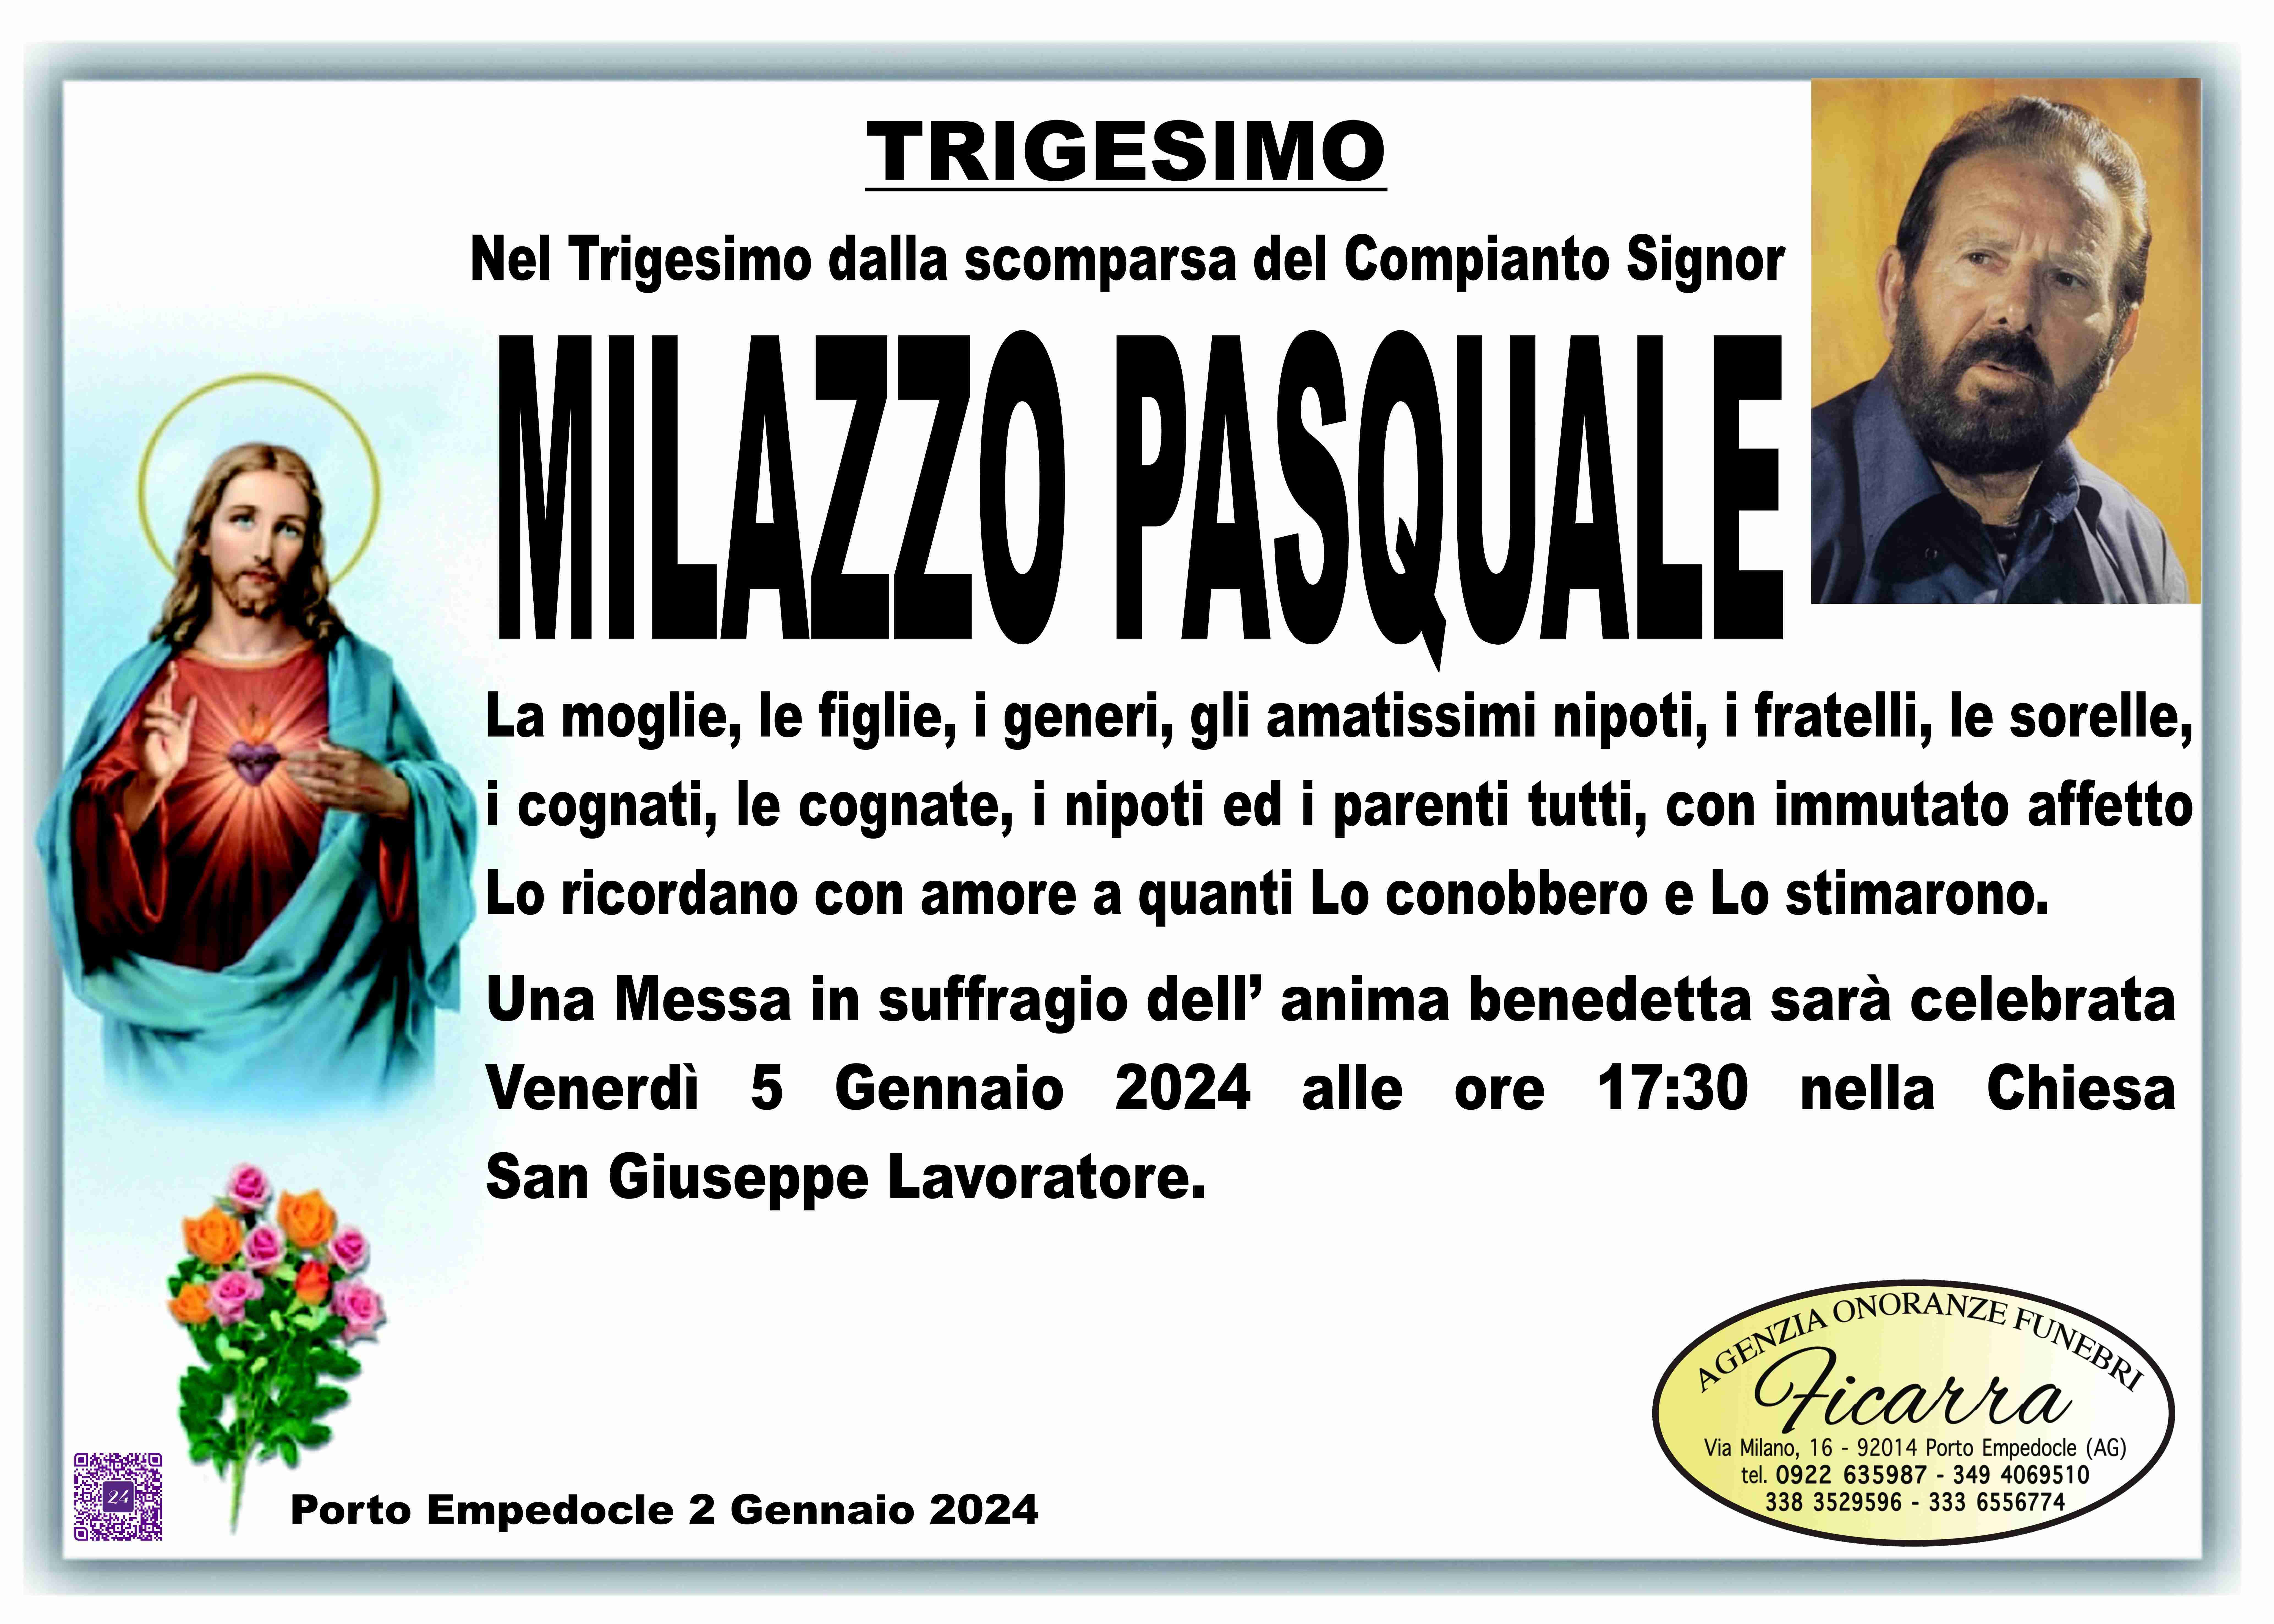 Pasquale Milazzo